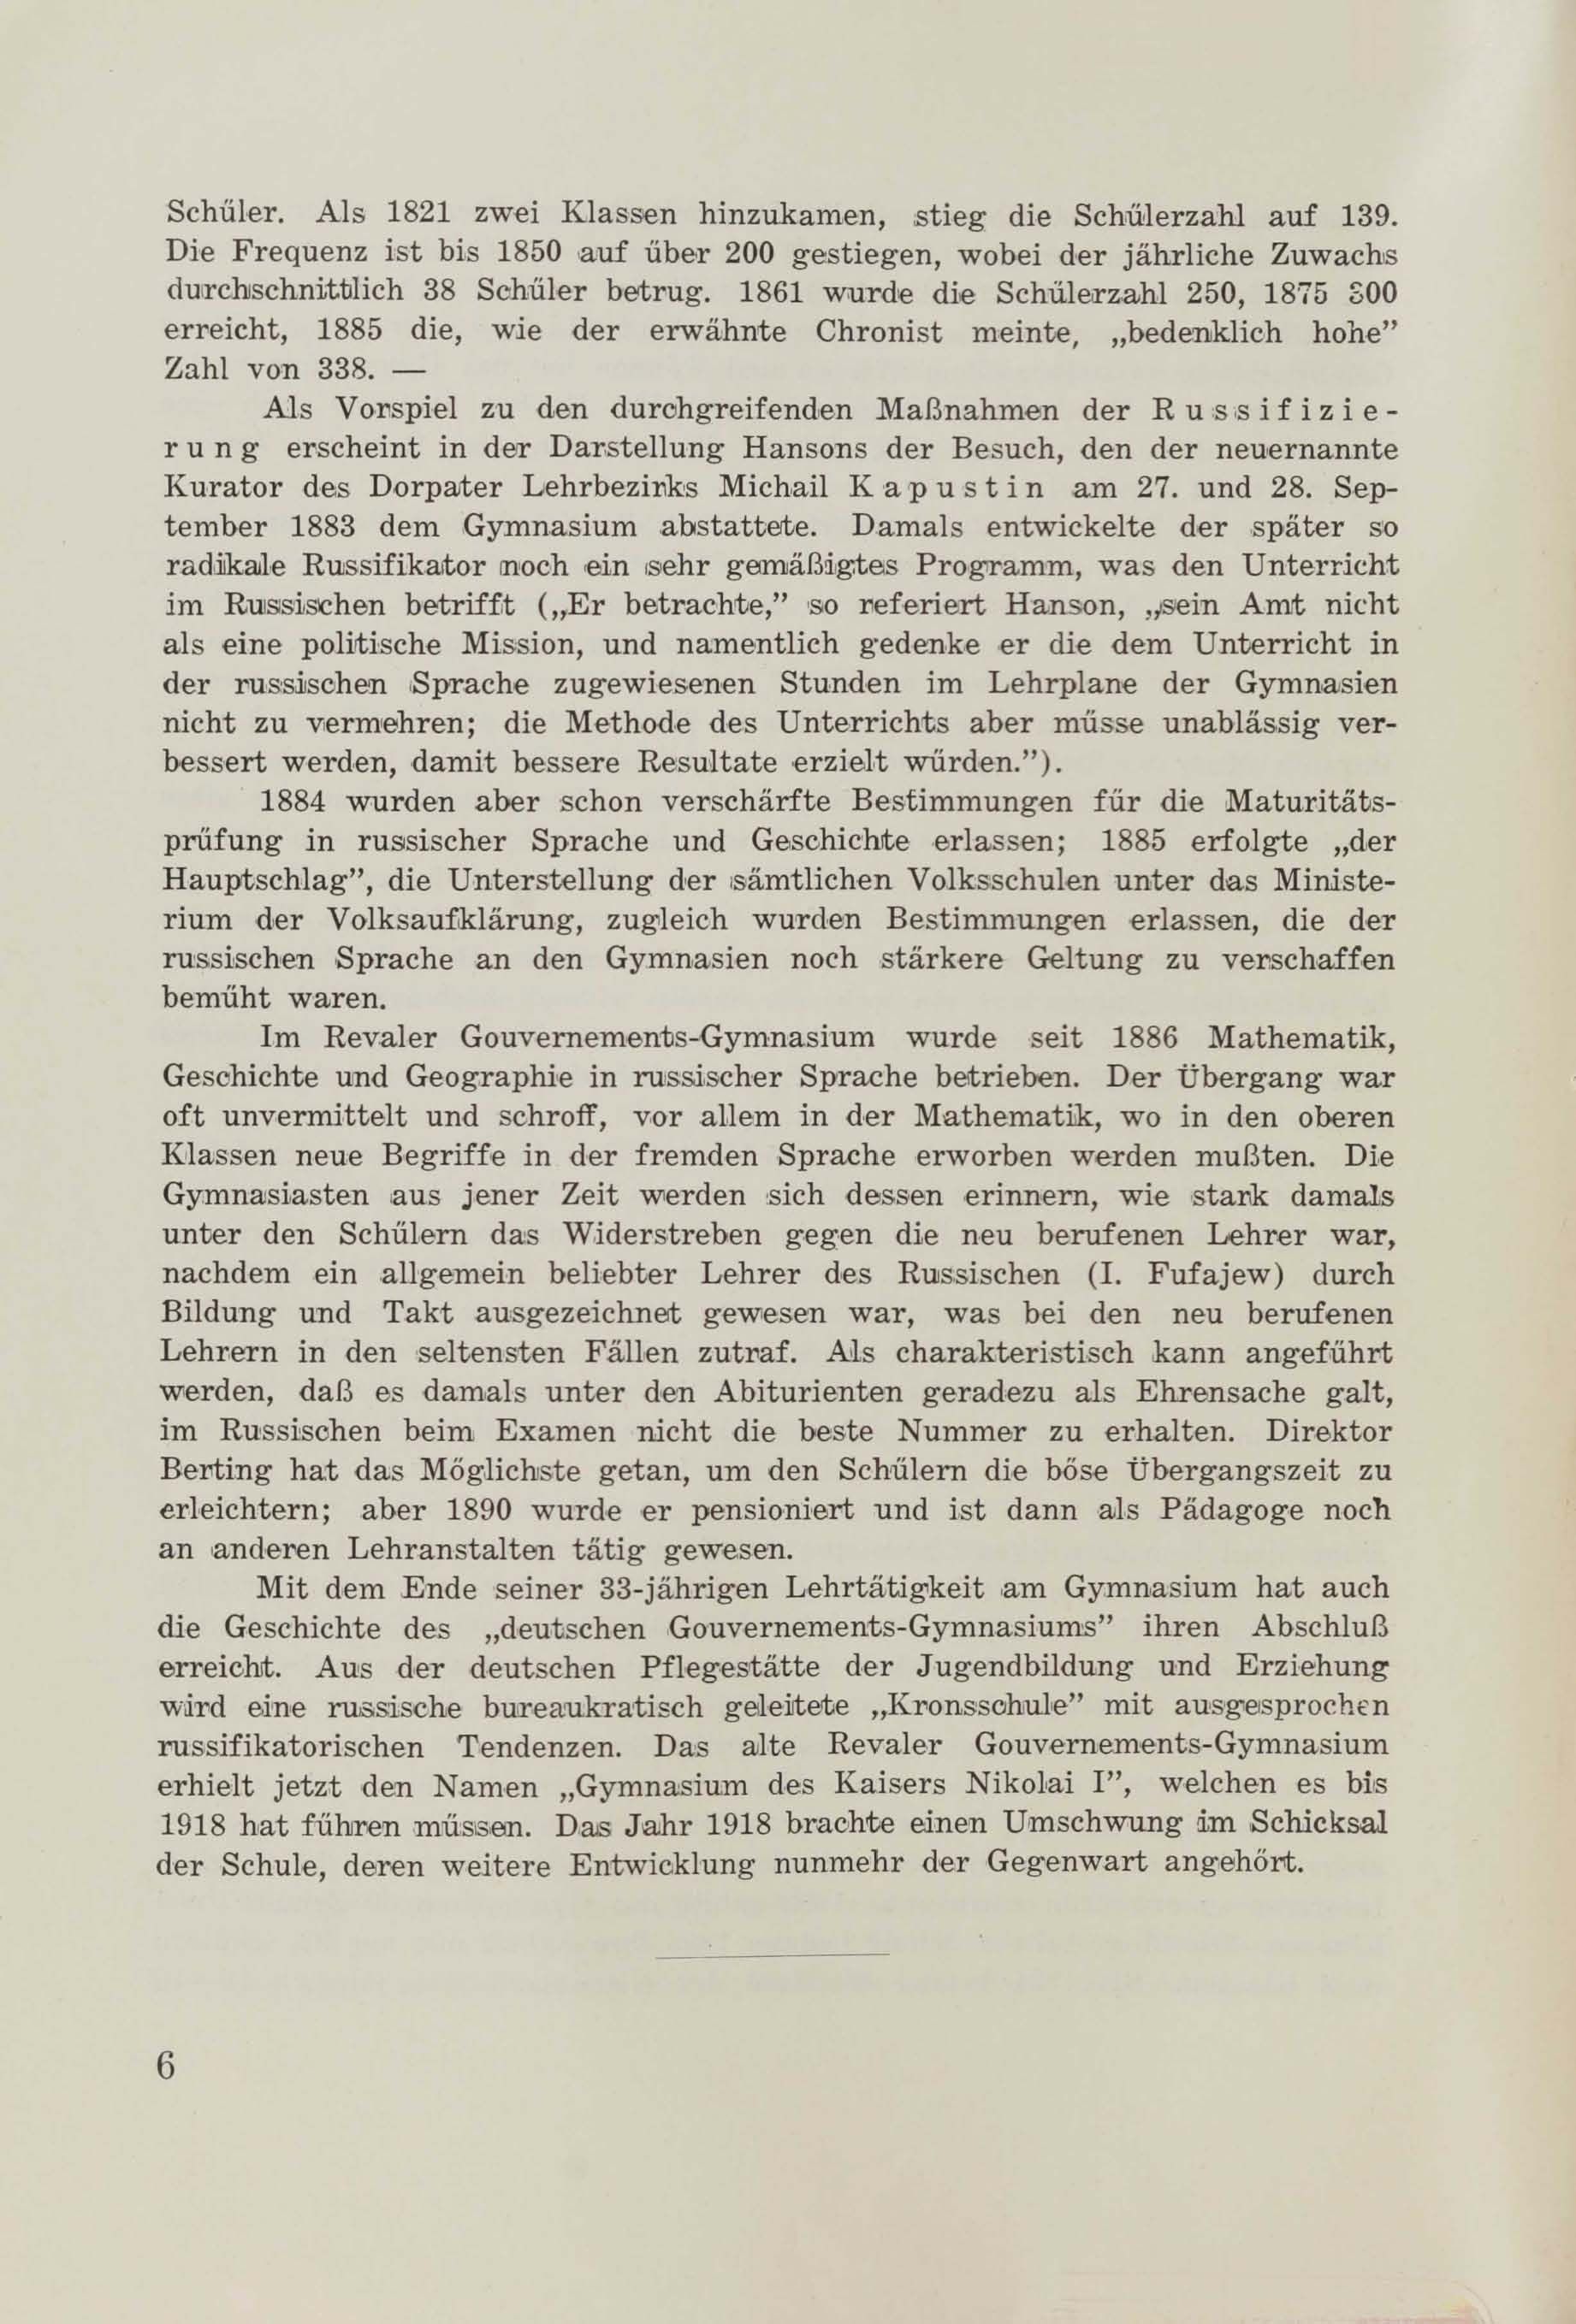 Schüler-Verzeichnis des Revalschen Gouvernements-Gymnasiums 1805–1890 (1931) | 17. (6) Põhitekst